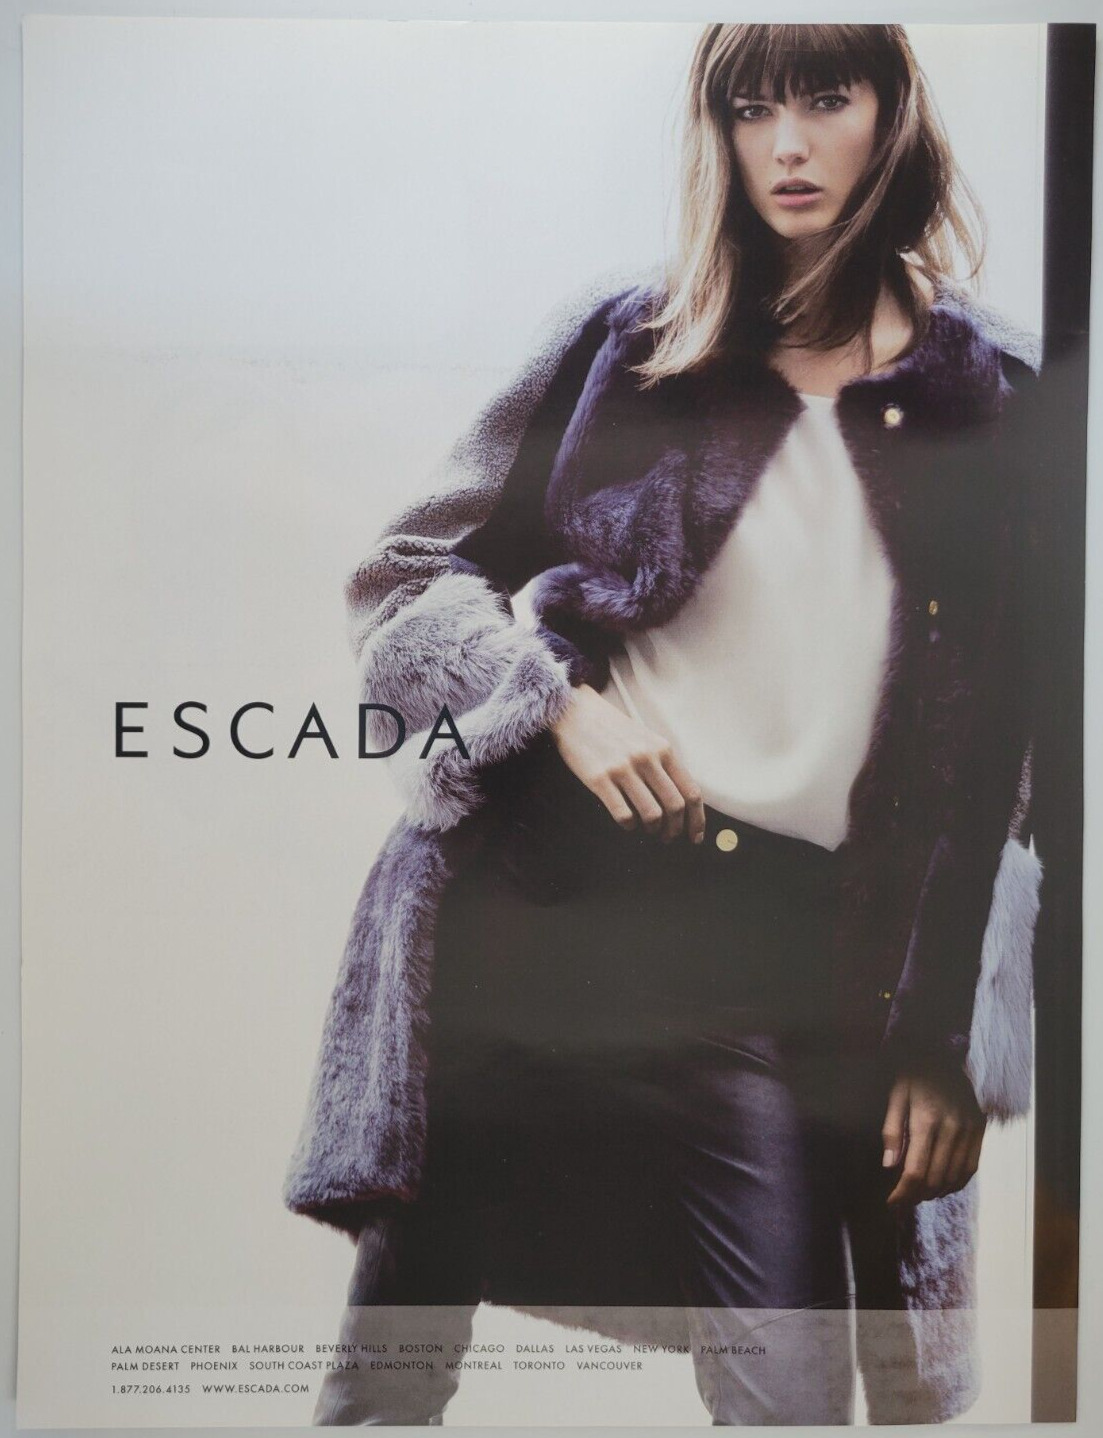 Escada Luxury Women\'s Clothing Fashion 2013 W Magazine Ad 10x13\